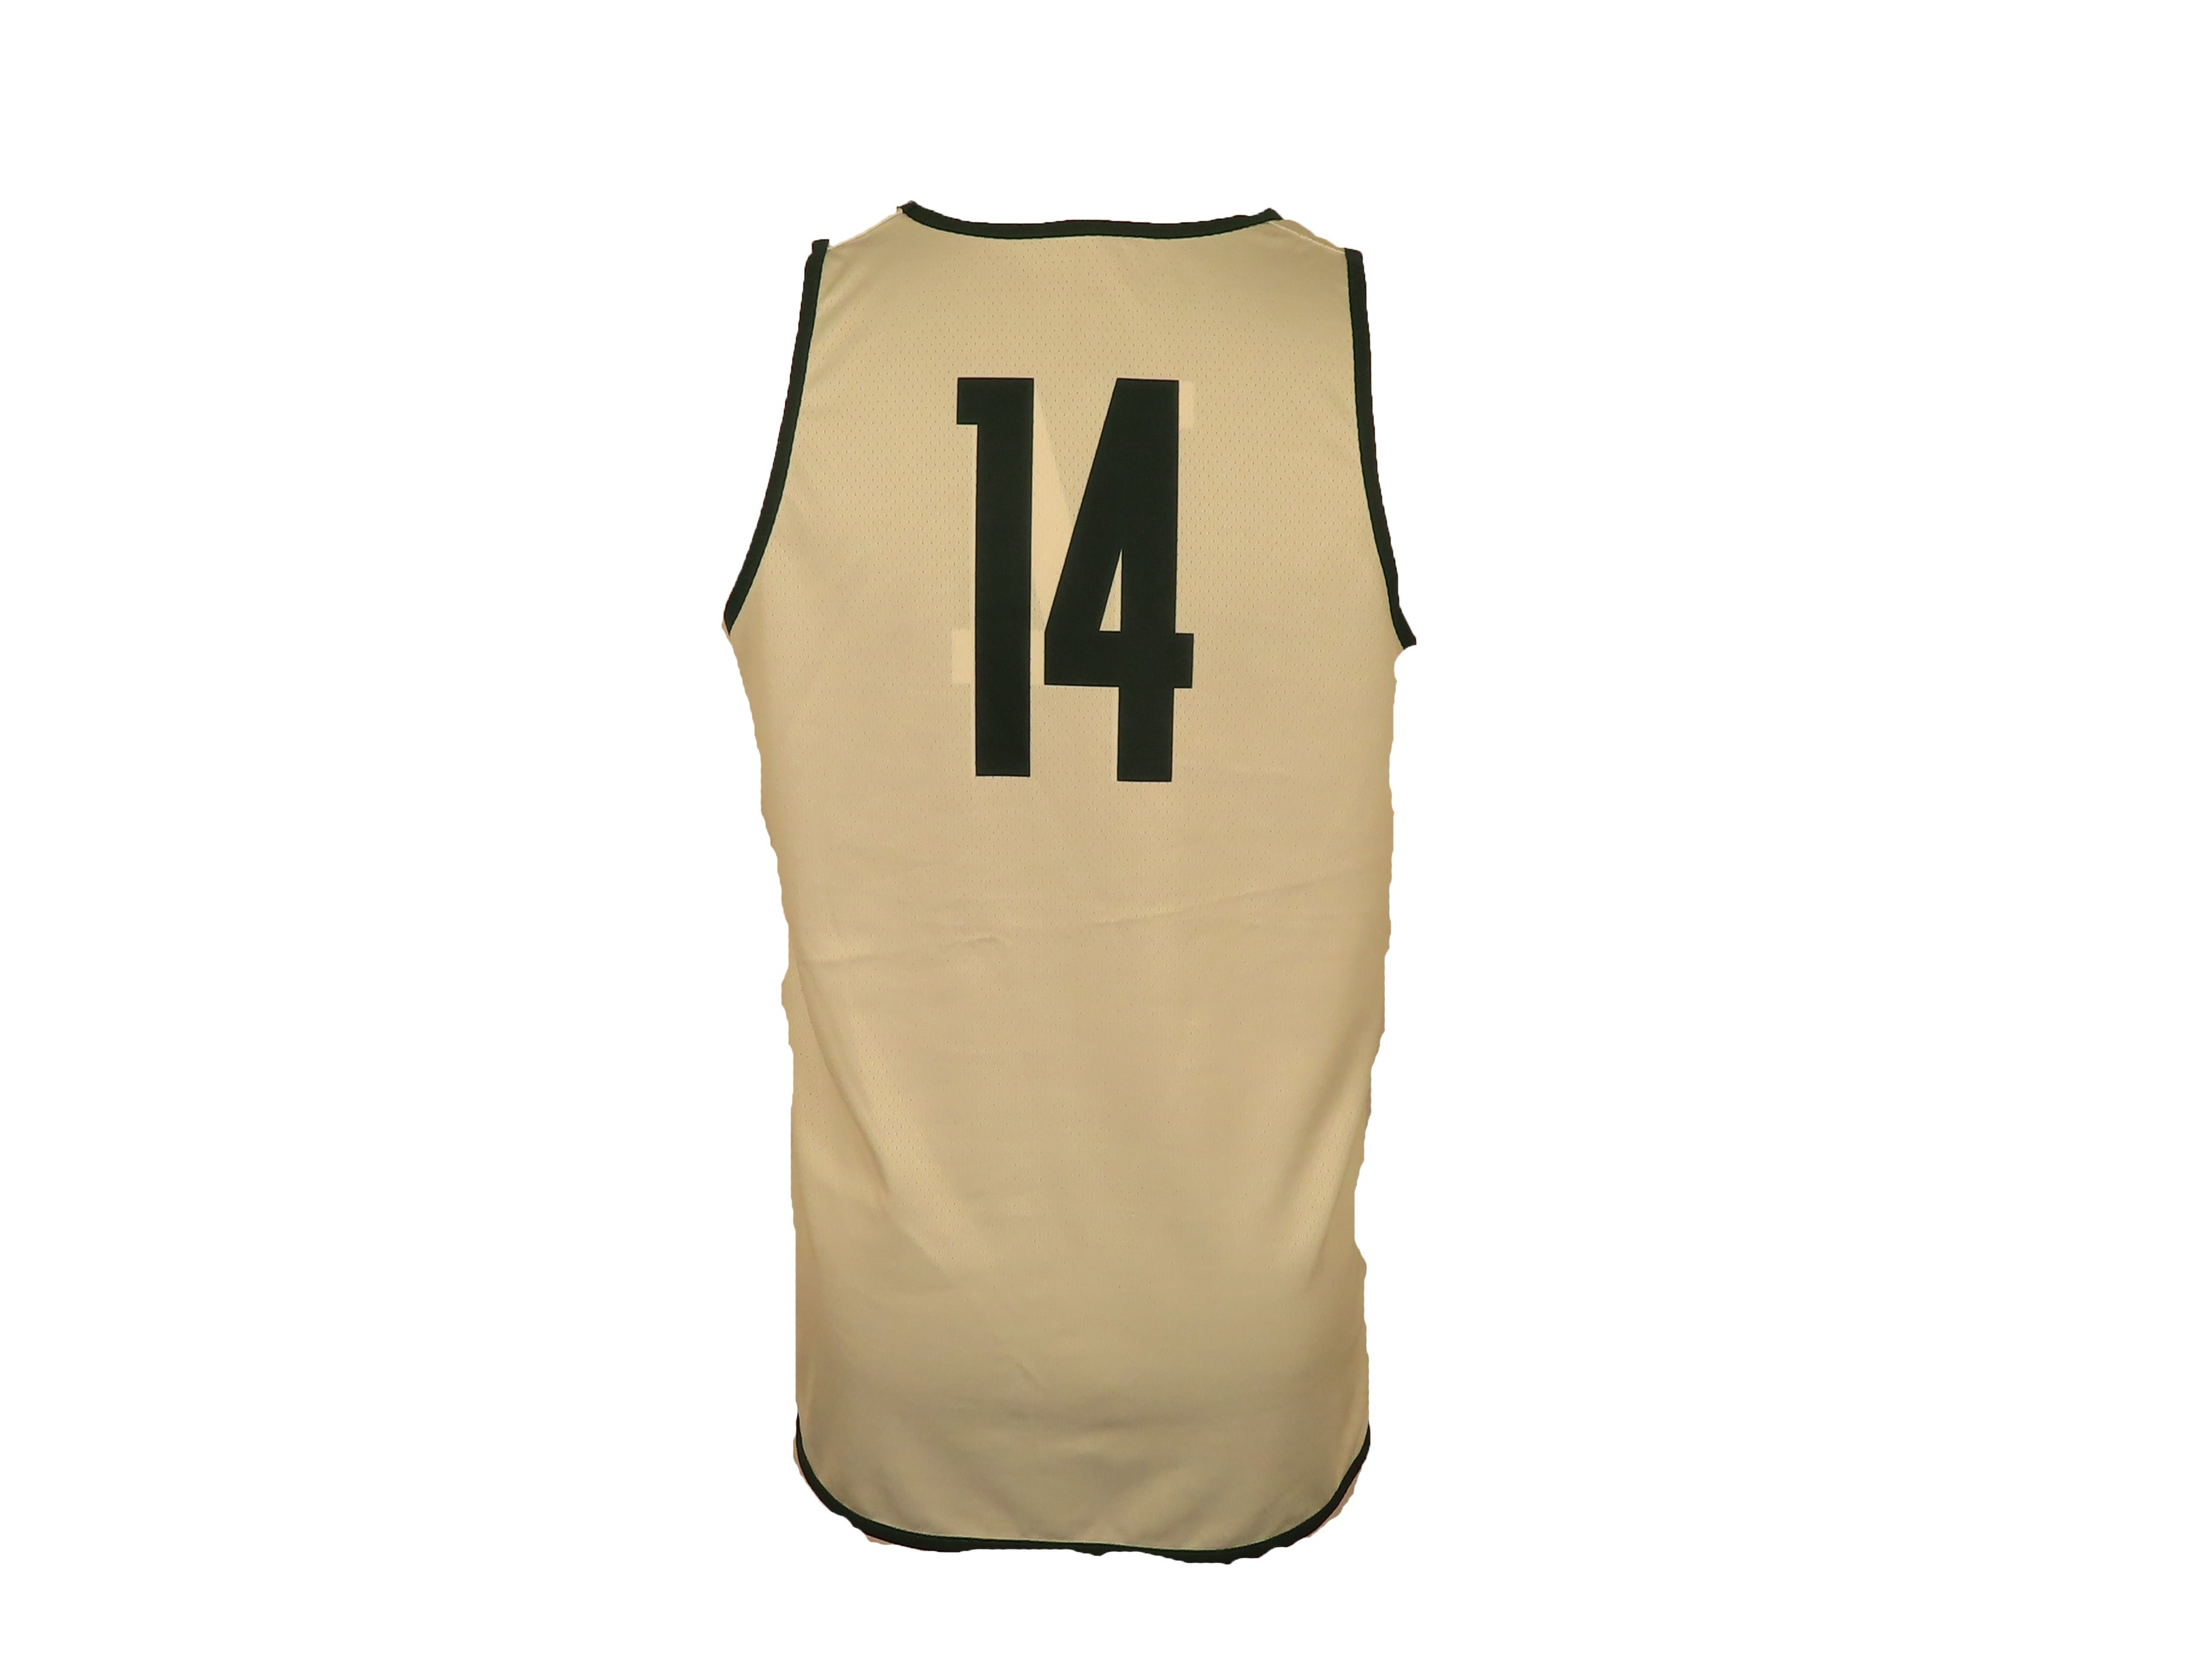 Nike Green & White Reversible Women's Basketball #14 Jersey Size L